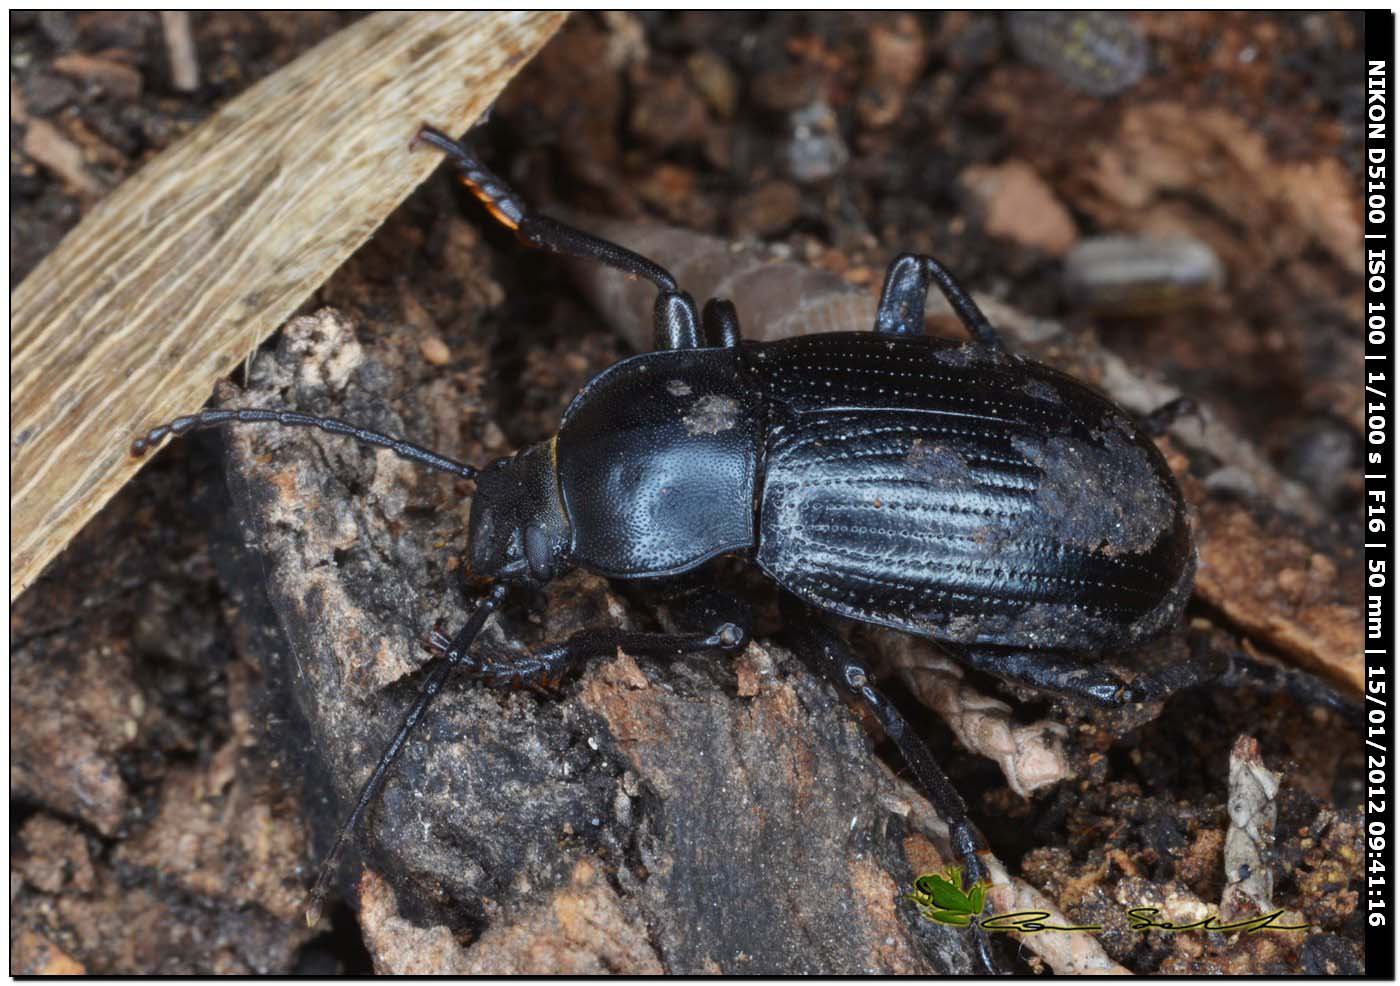 Carabidae, no Tenebrionidae... Probaticus ebeninus ebeninus